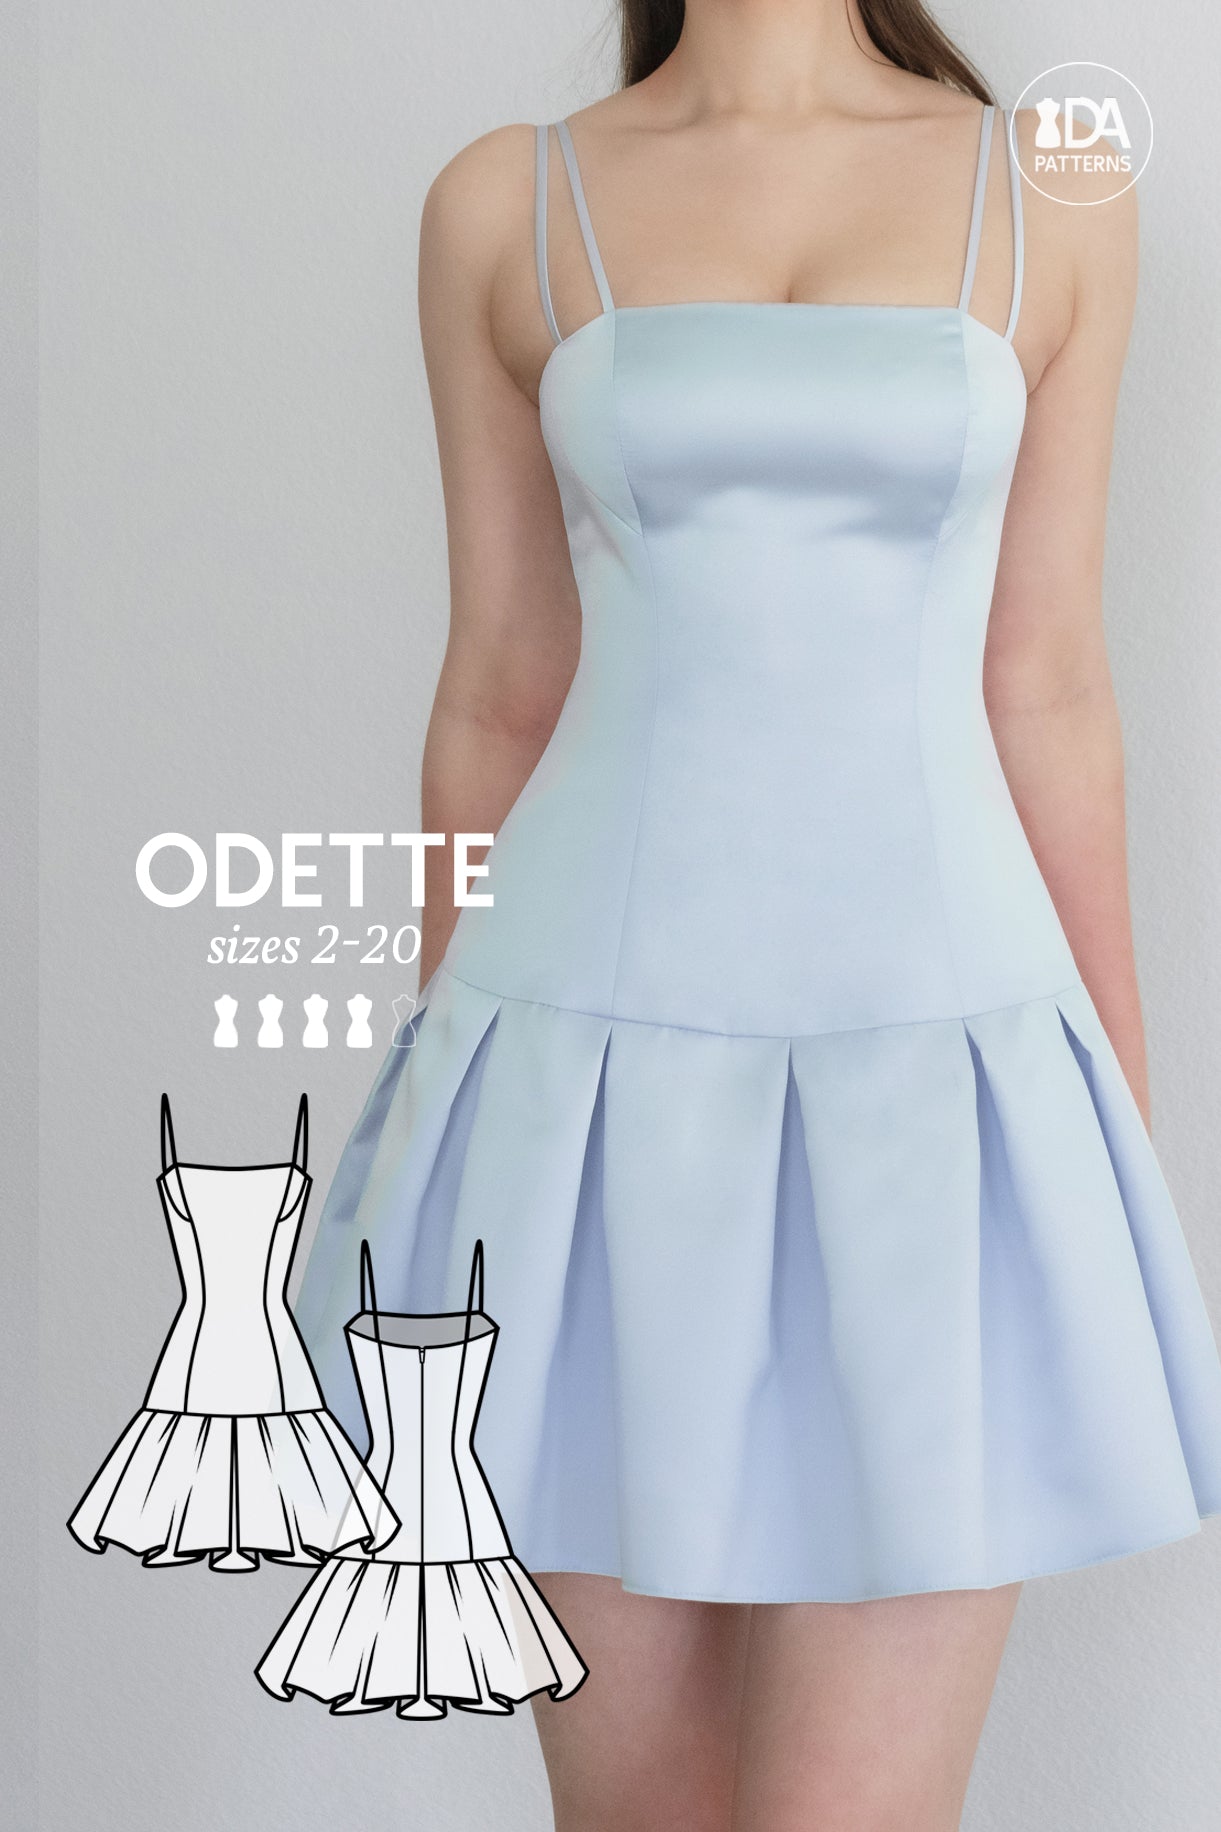 Odette Drop-Waist Pleated Skirt Dress Sewing Pattern by